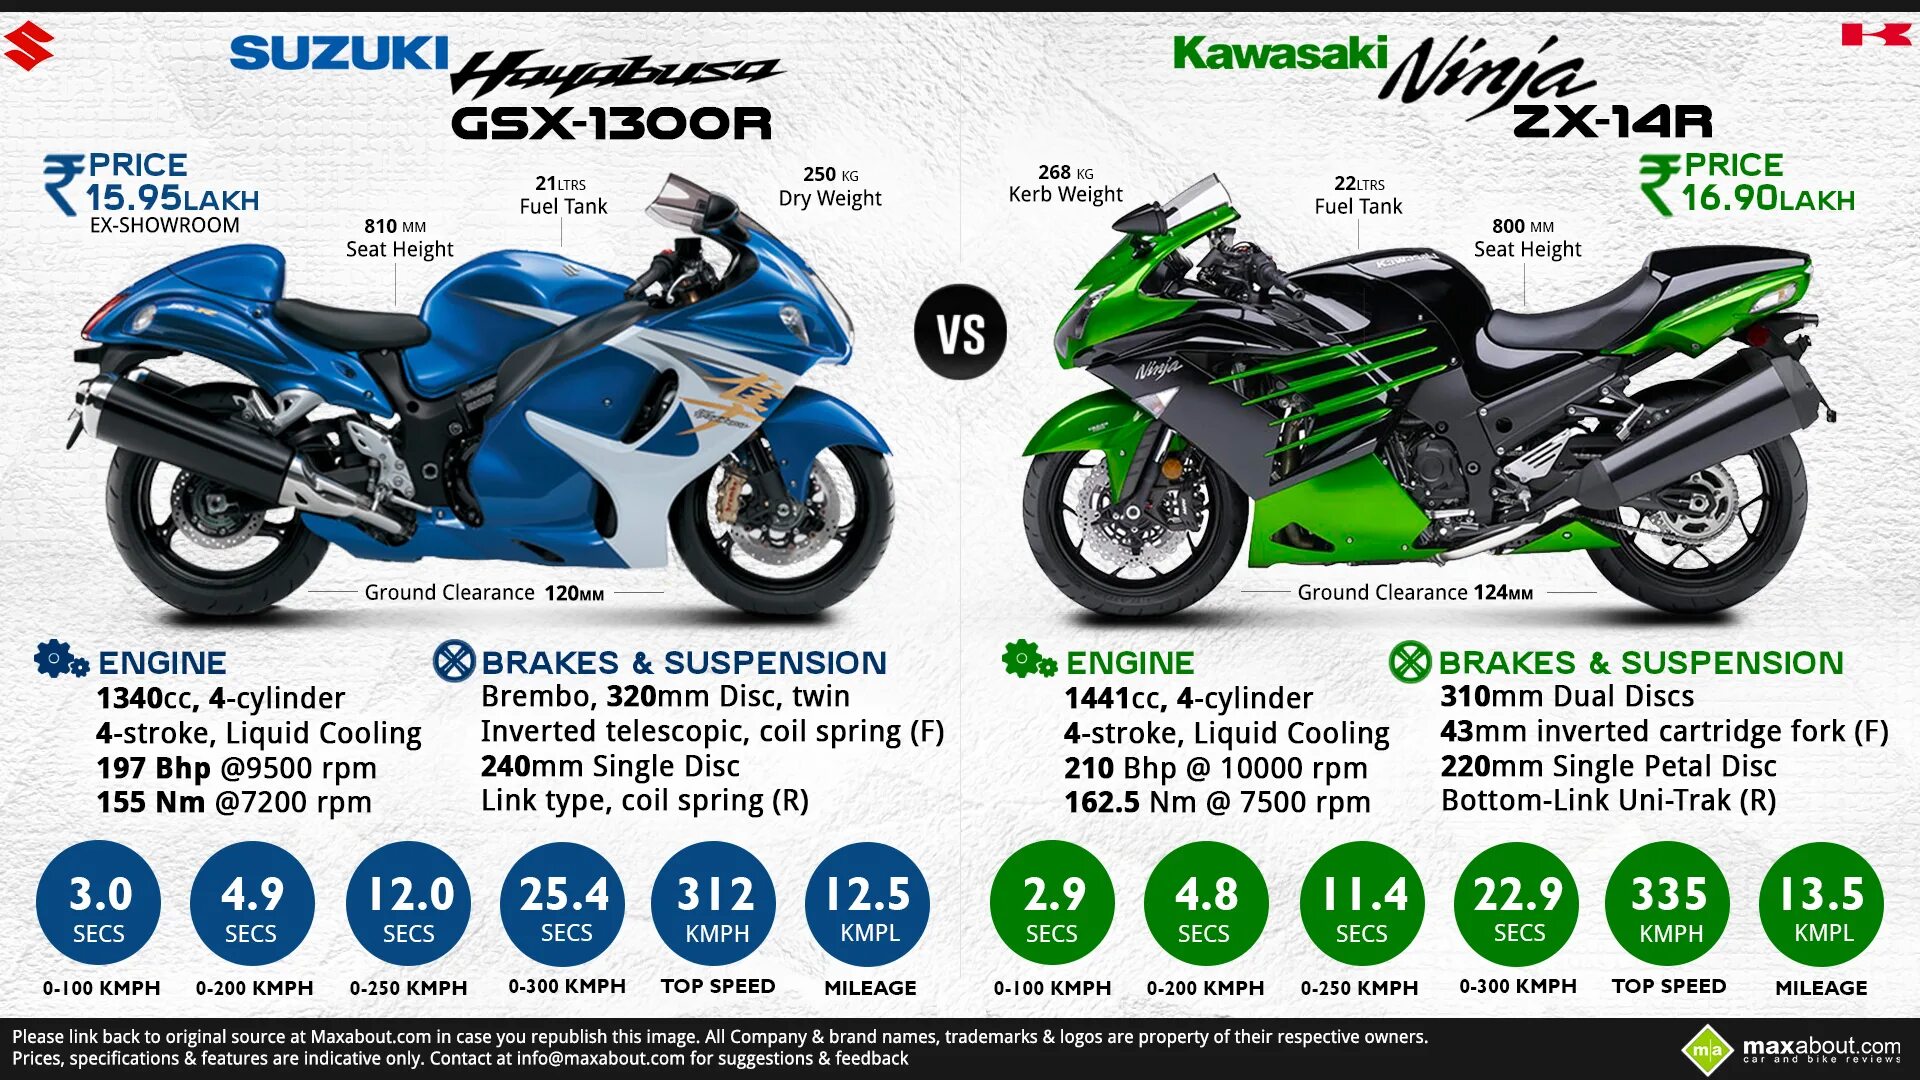 Мотоцикл Suzuki Ninja 1000. Kawasaki Ninja ZX 14r характеристики. Кавасаки ниндзя 400 вес. Вес мотоцикла Кавасаки ниндзя 400r. Kawasaki ninja разгон до 100